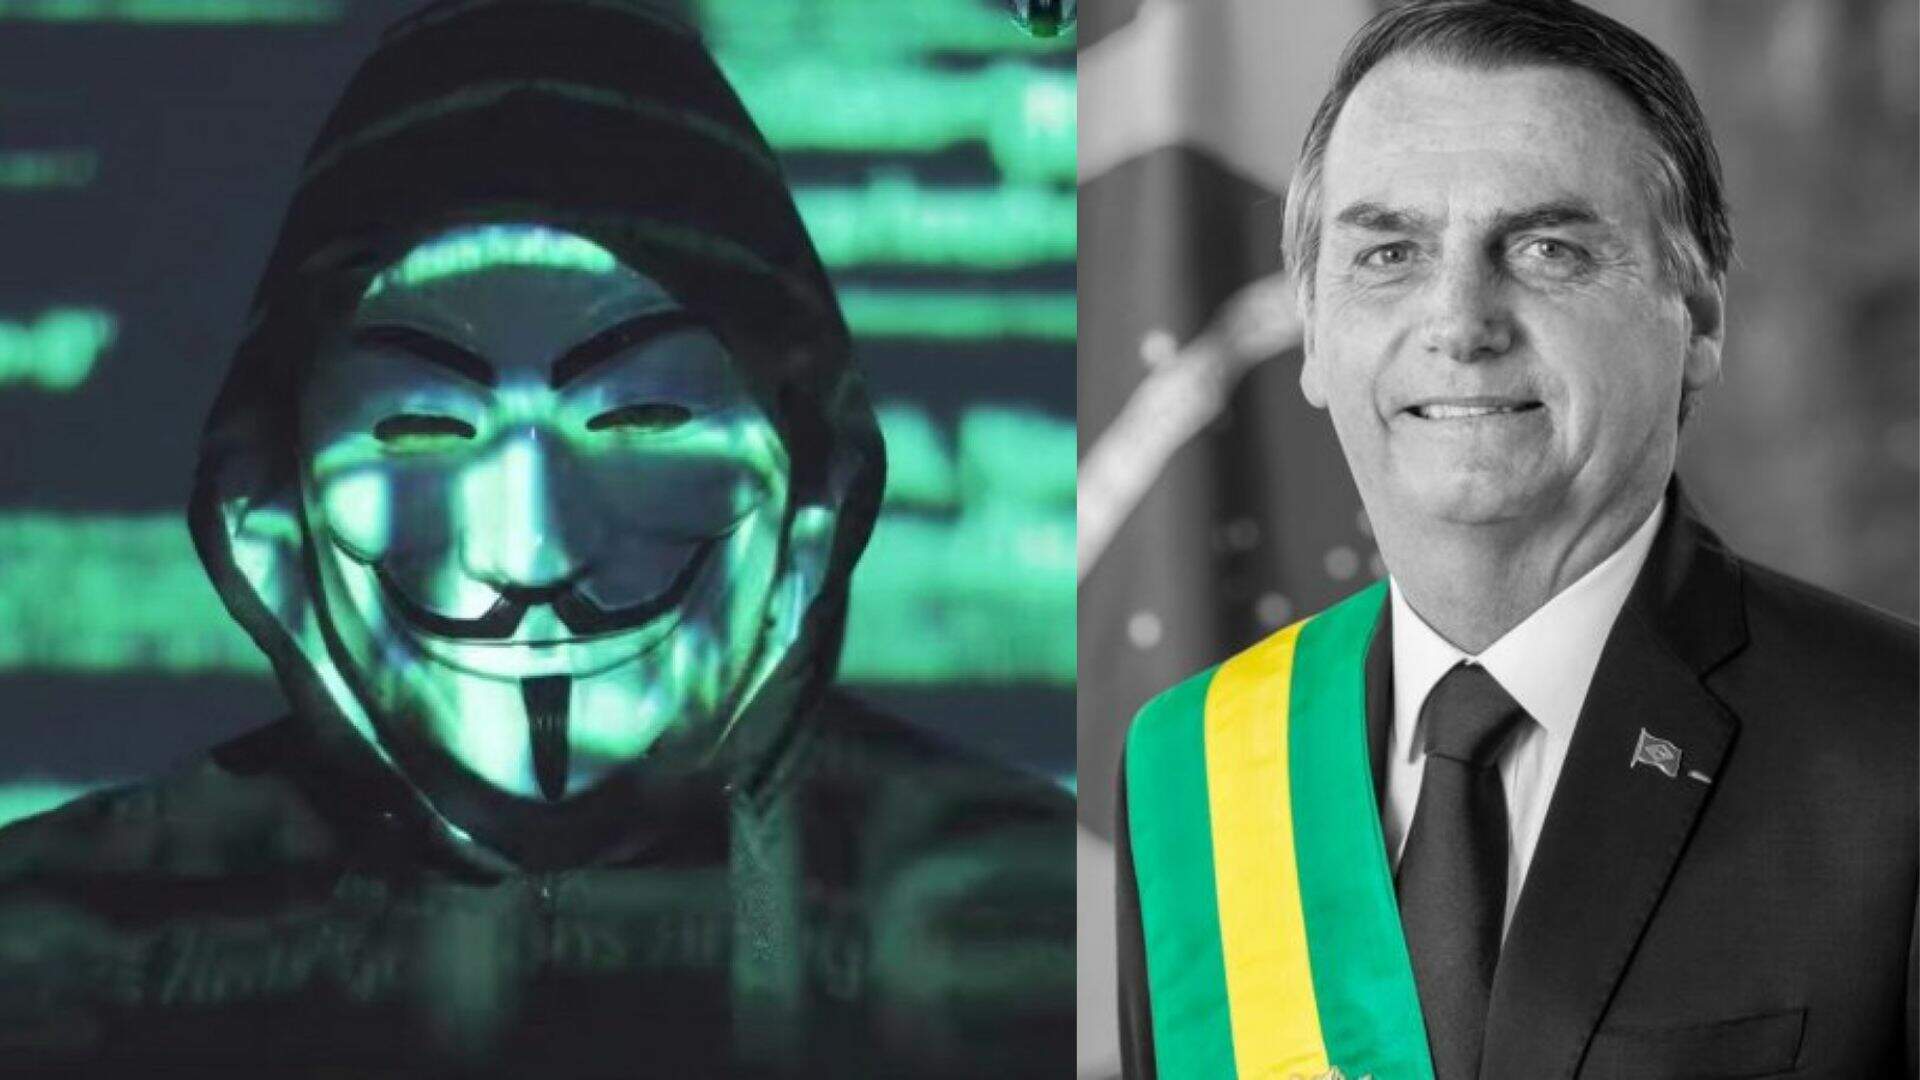 1 dia antes das Eleições, grupo de hackers ameaça Bolsonaro e expõe o que ninguém esperava